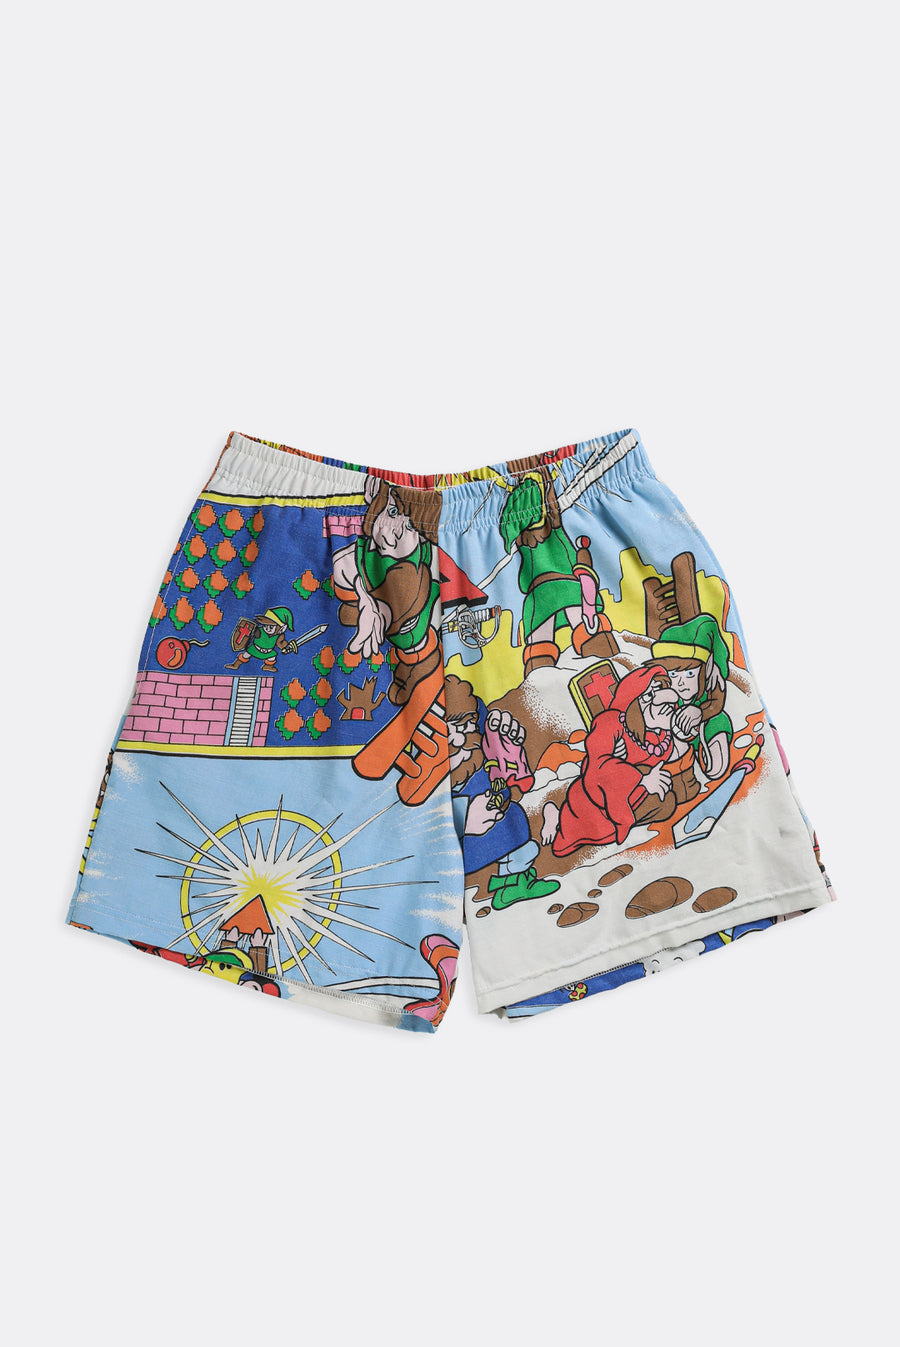 Unisex Rework Mario Boxer Shorts - M, L